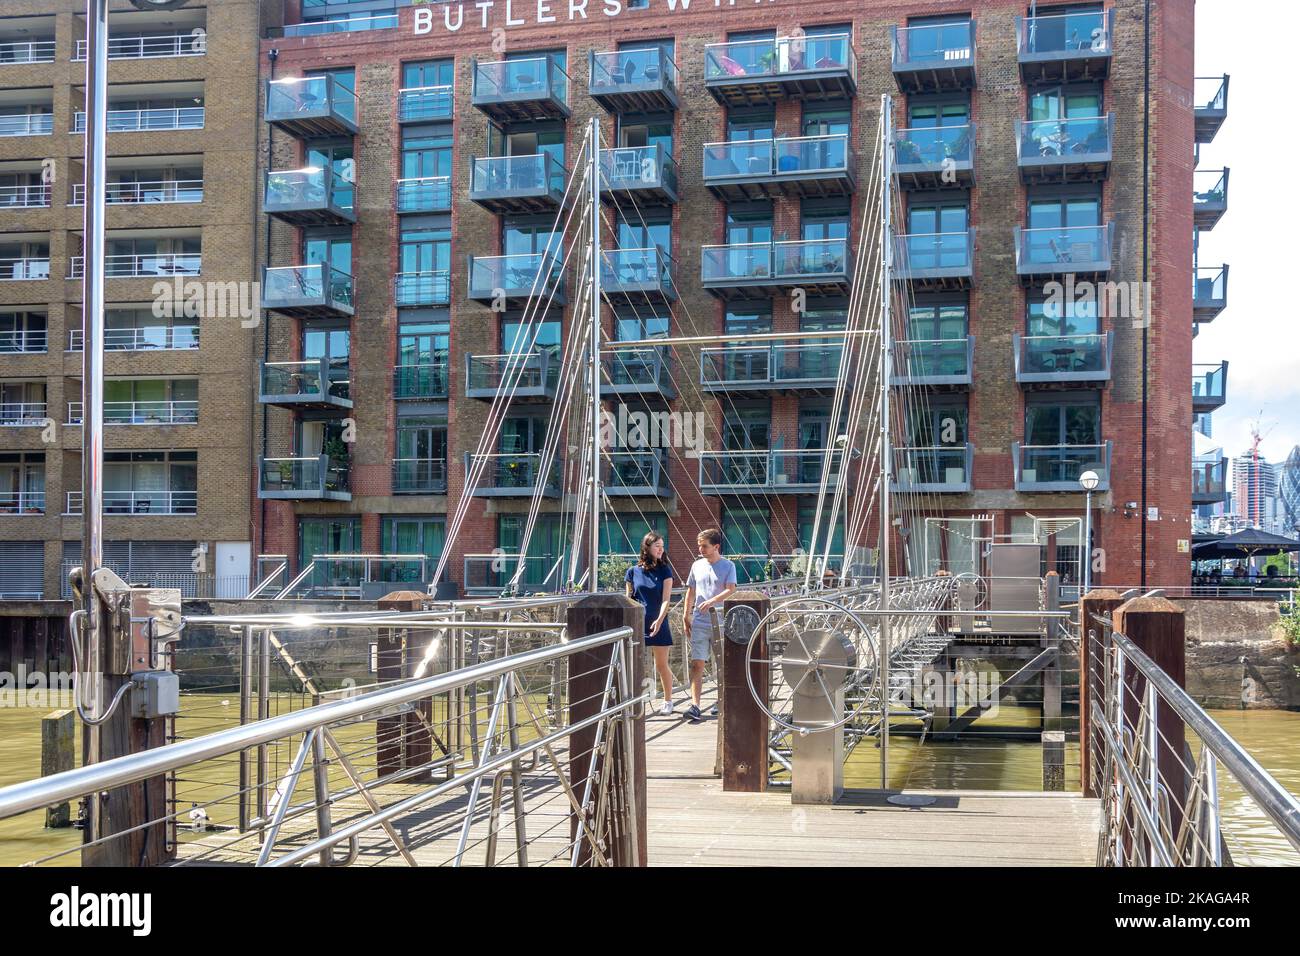 Pont de St Saveurs Dock, St Saveurs Dock, Bermondsey, le quartier londonien de Southwark, Grand Londres, Angleterre, Royaume-Uni Banque D'Images